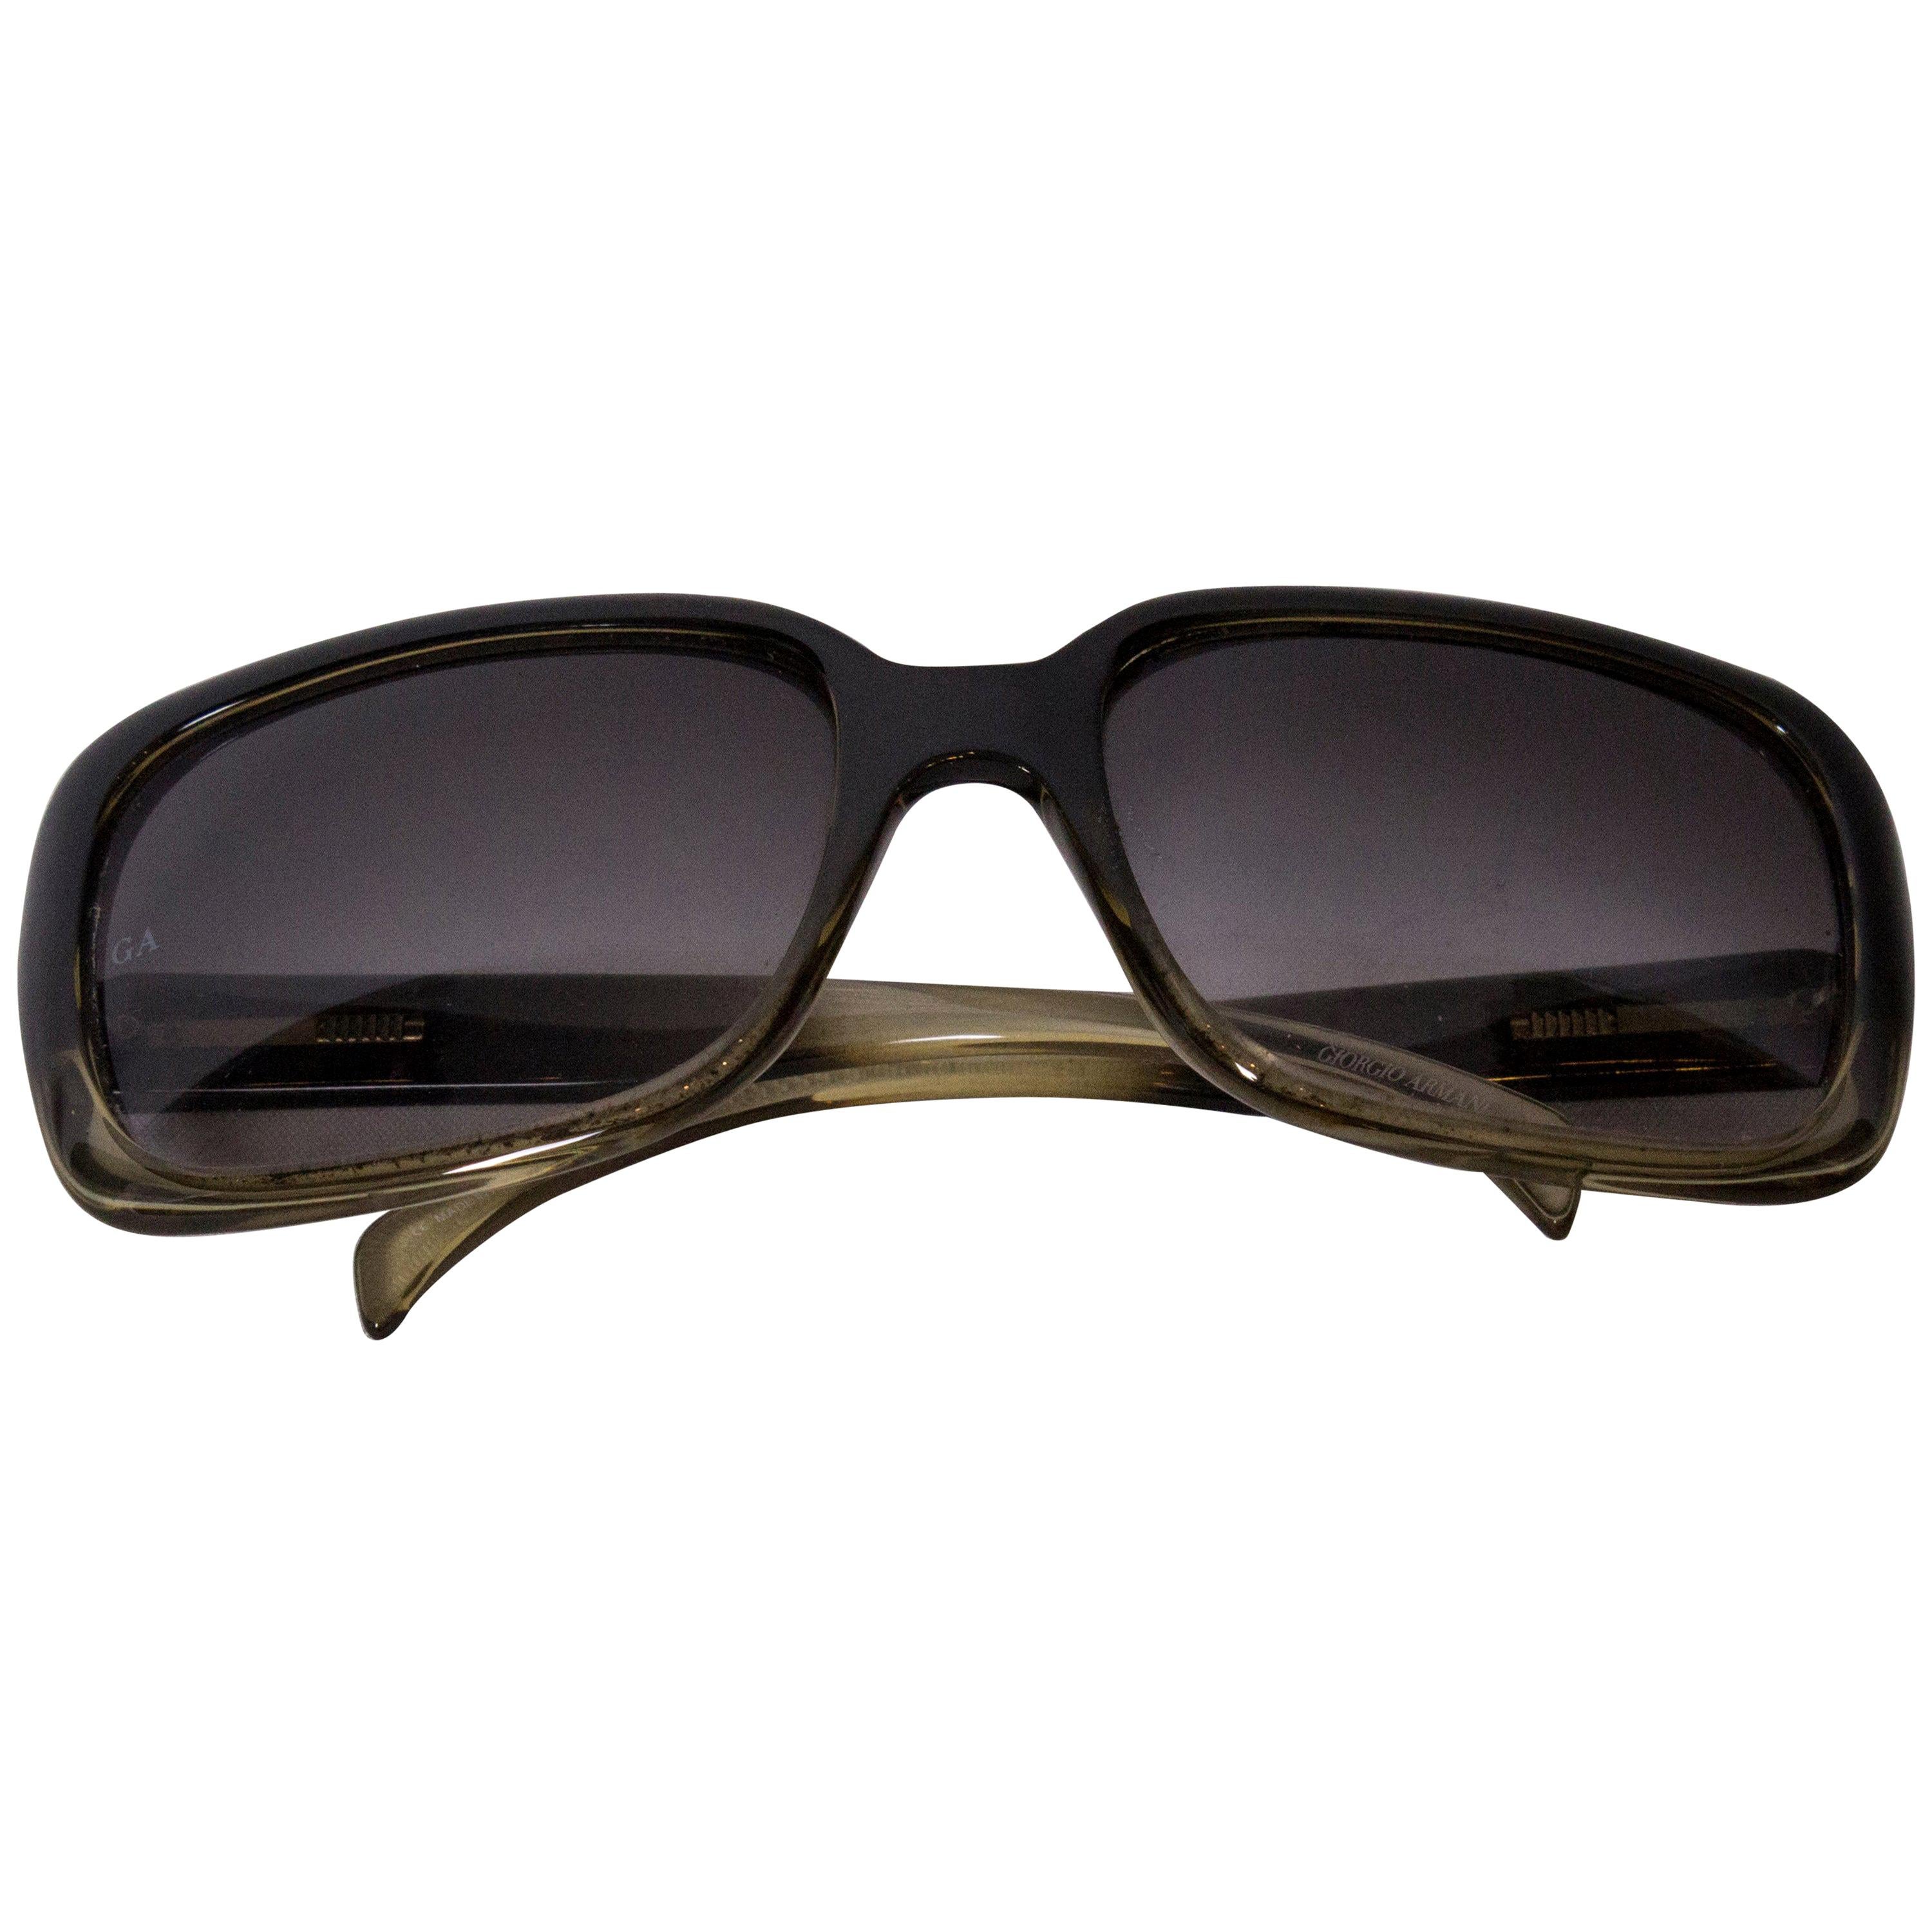 Total 56+ imagen vintage giorgio armani sunglasses - Abzlocal.mx